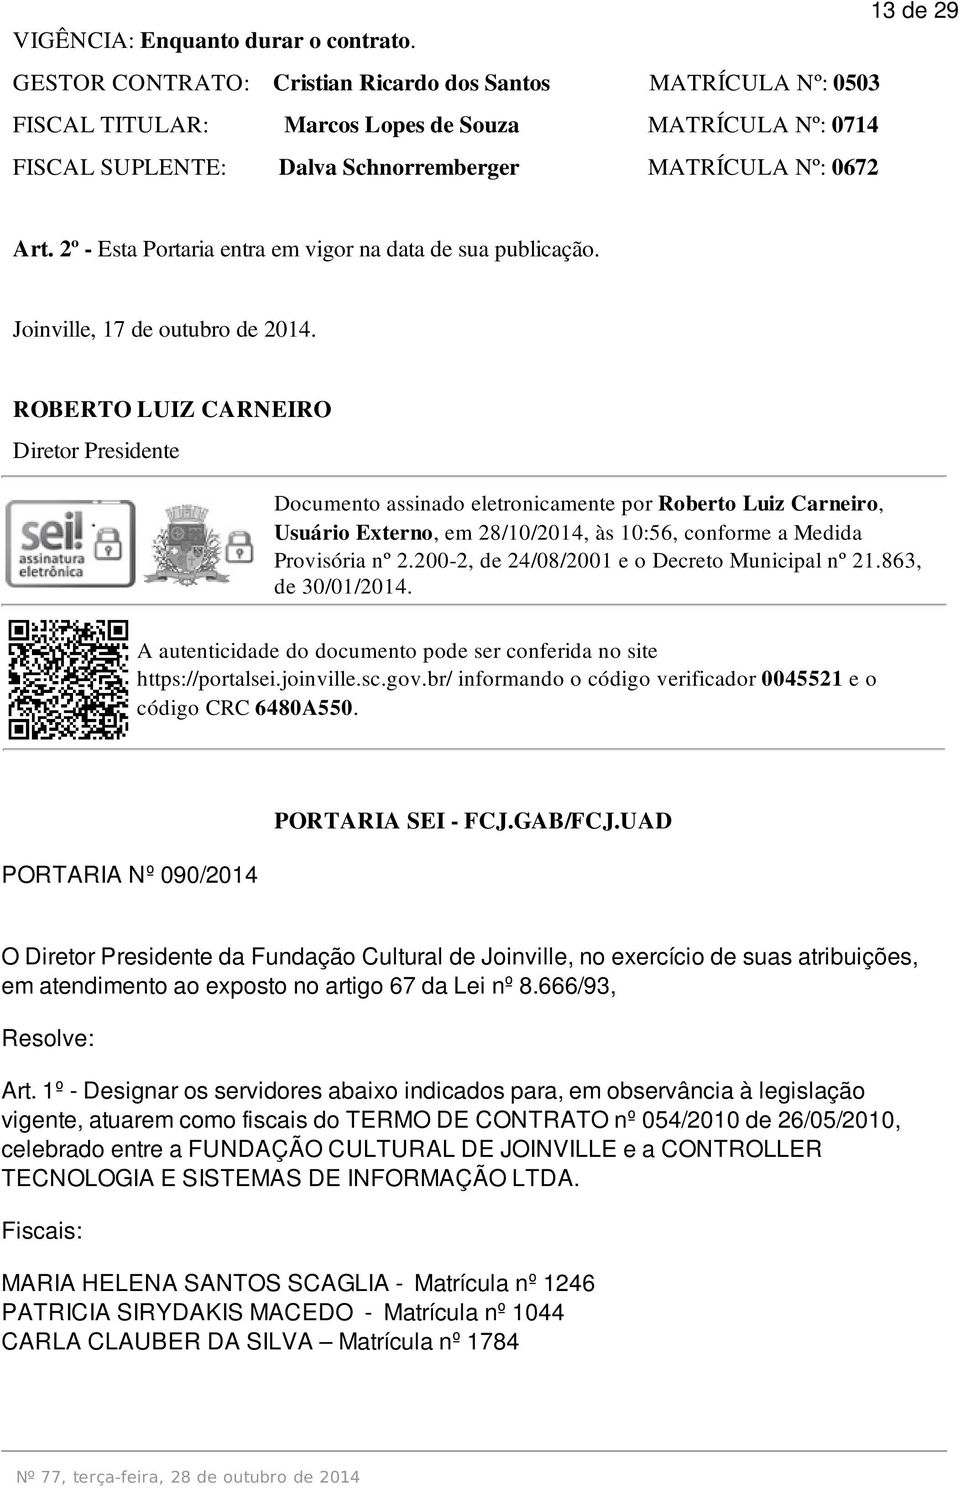 2º - Esta Portaria entra em vigor na data de sua publicação. Joinville, 17 de outubro de 2014.